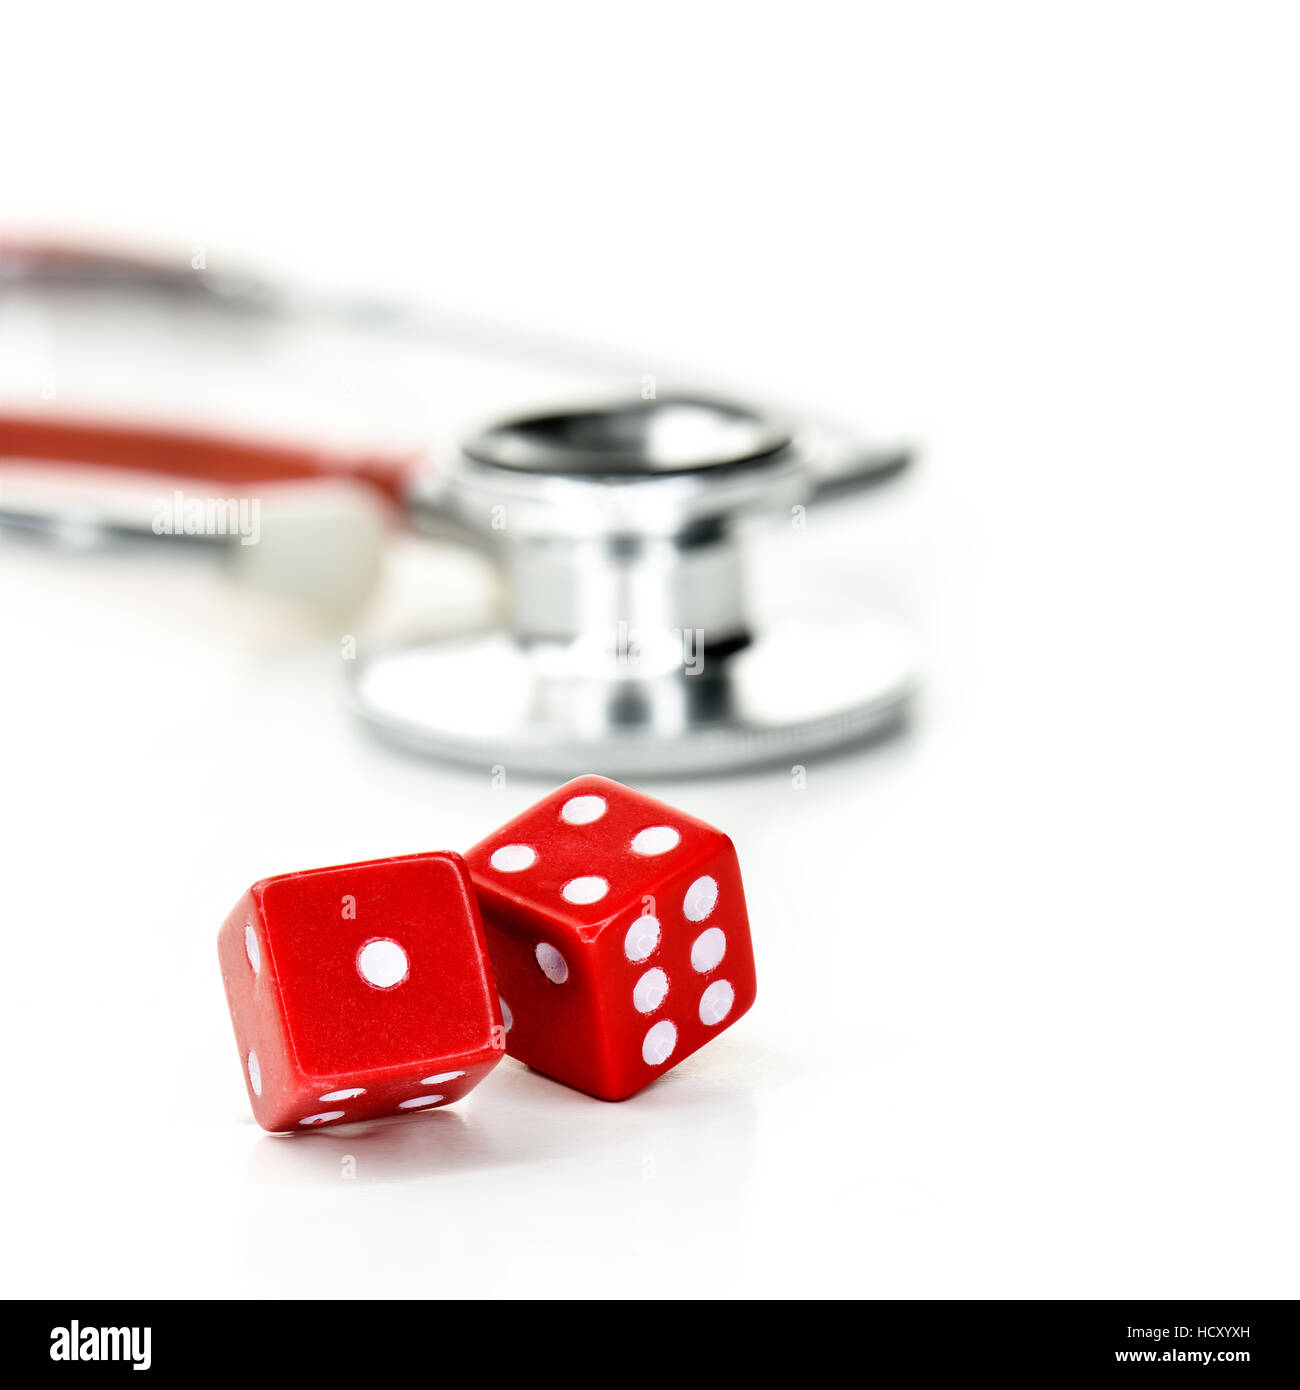 Zwei rote Würfel und Stethoskop mit Textfreiraum. Konzept-Bild für die Postleitzahl Lotterie Gesundheitsversorgung, besser empfangen heilen Stockfoto